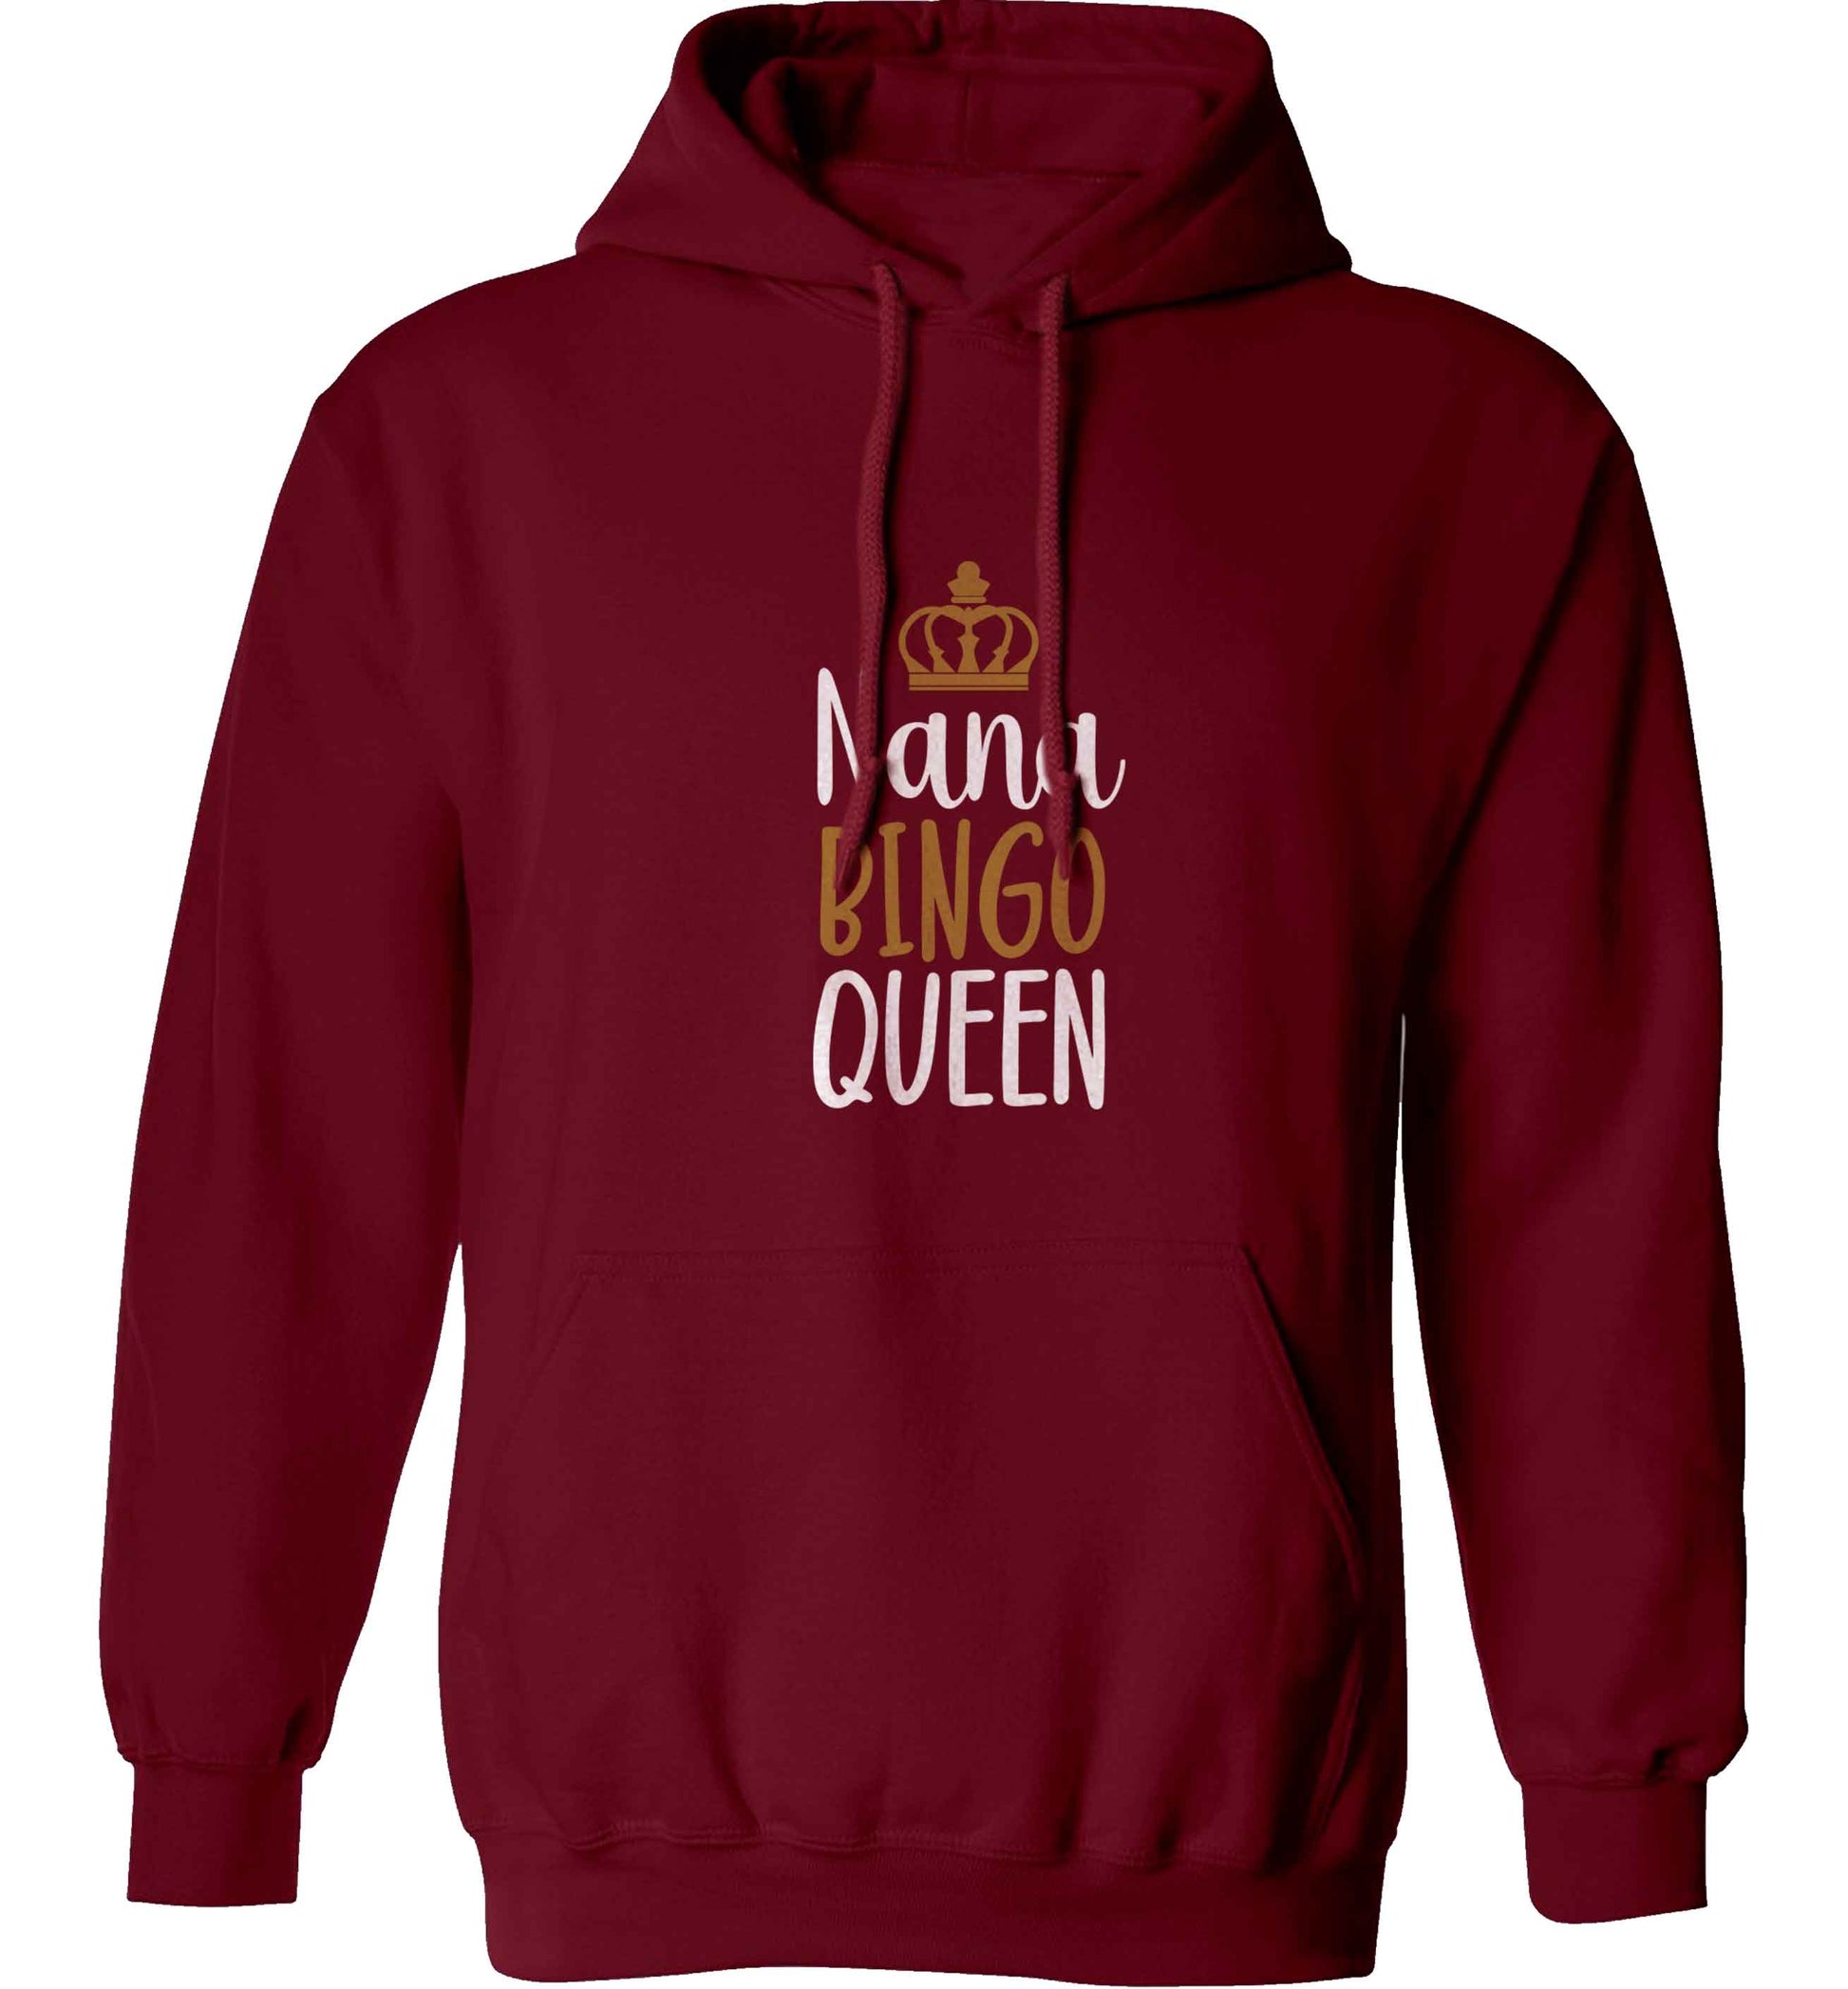 Personalised bingo queen adults unisex maroon hoodie 2XL